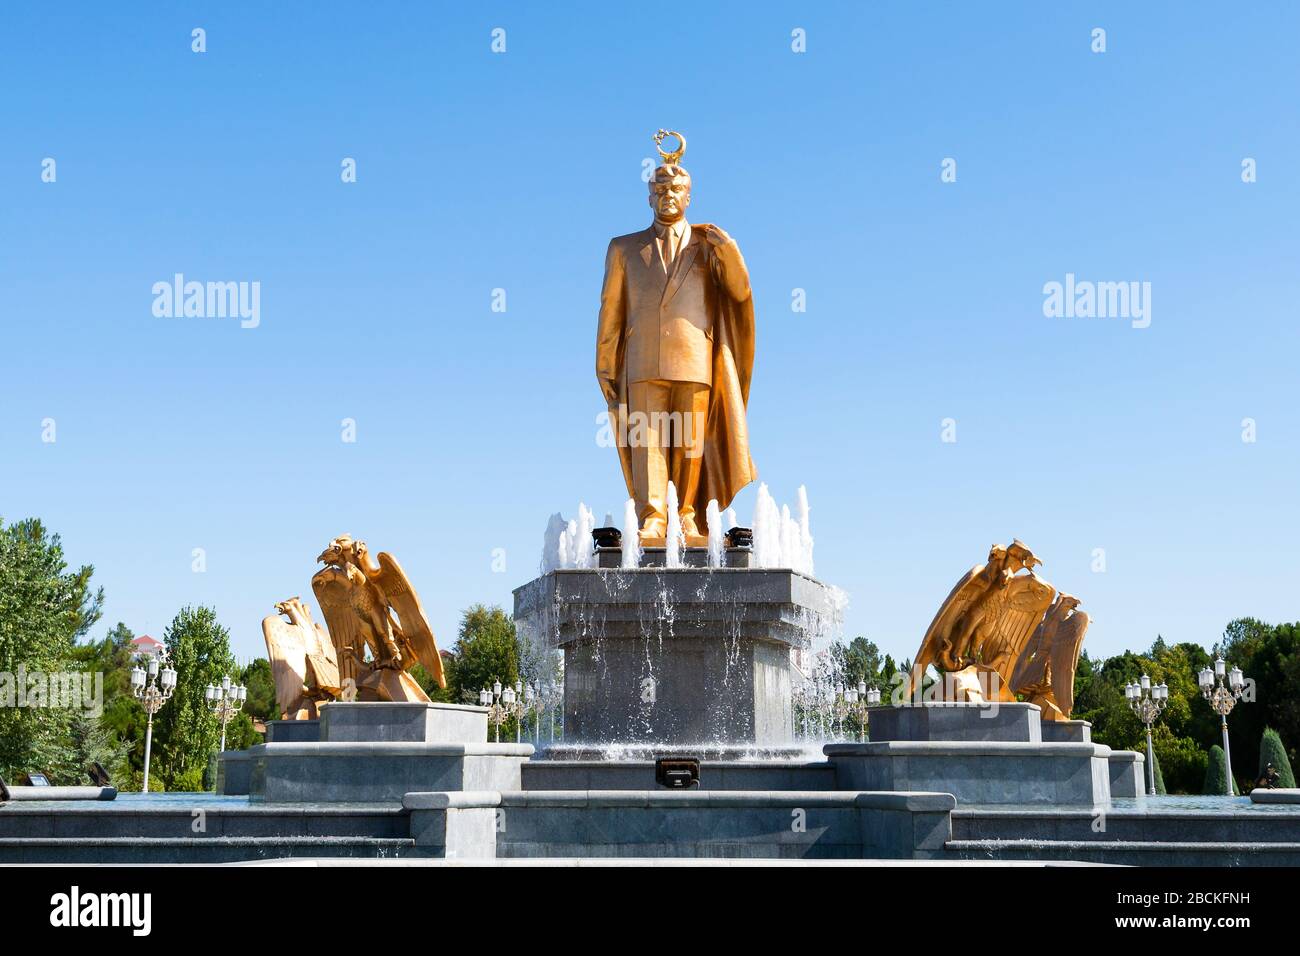 Saparmurat Nijasov Statue von Gold im Independence Park, Aschgabat, Turkmenistan. Erster turkmenischer Präsident, auch bekannt als Turkmenbashi. Goldene Statue. Stockfoto